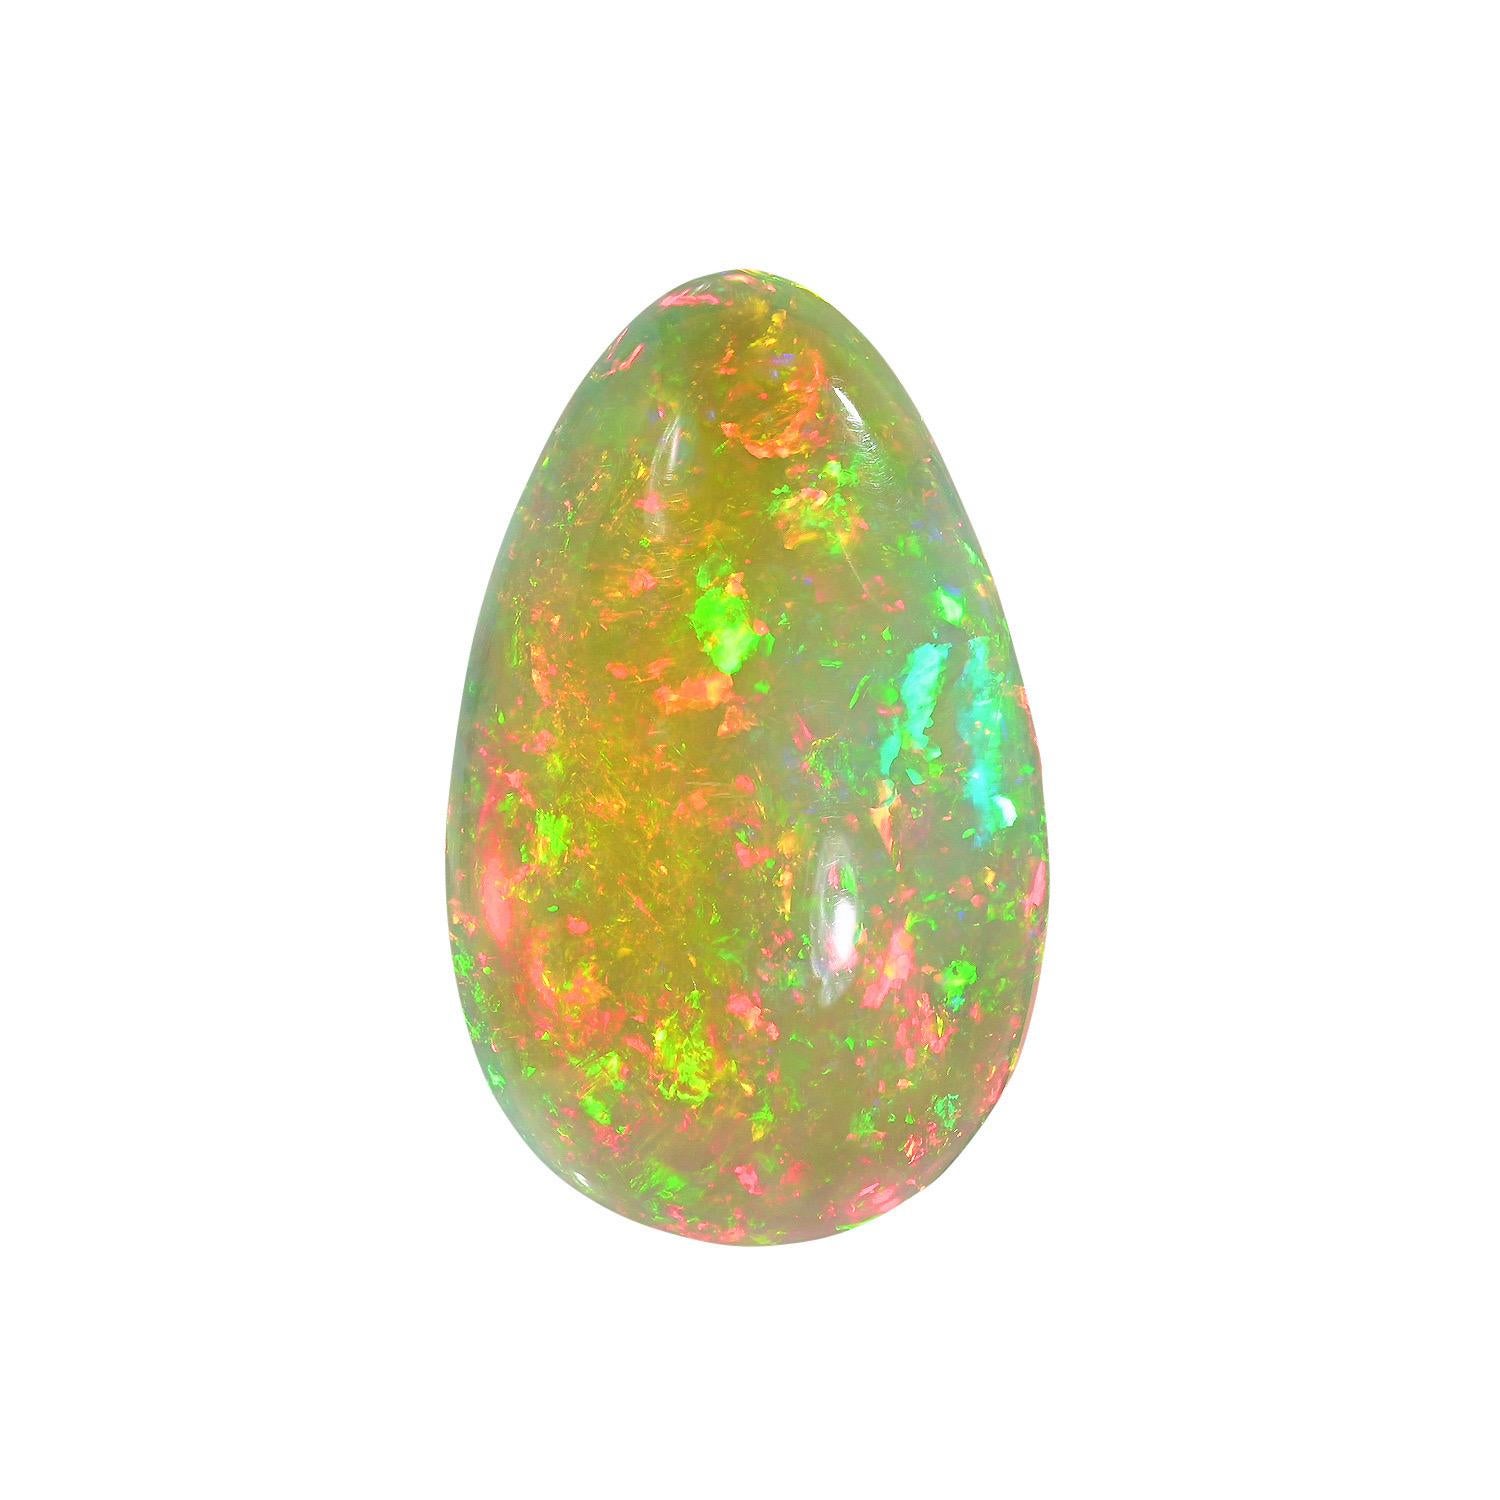 Natürlicher 22,17 Karat Äthiopischer Opal birnenförmiger loser Edelstein, angeboten ungefasst an einen Edelsteinliebhaber.
Rücksendungen werden von uns innerhalb von 7 Tagen nach Lieferung angenommen und bezahlt.
Auf Anfrage bieten wir Ihnen